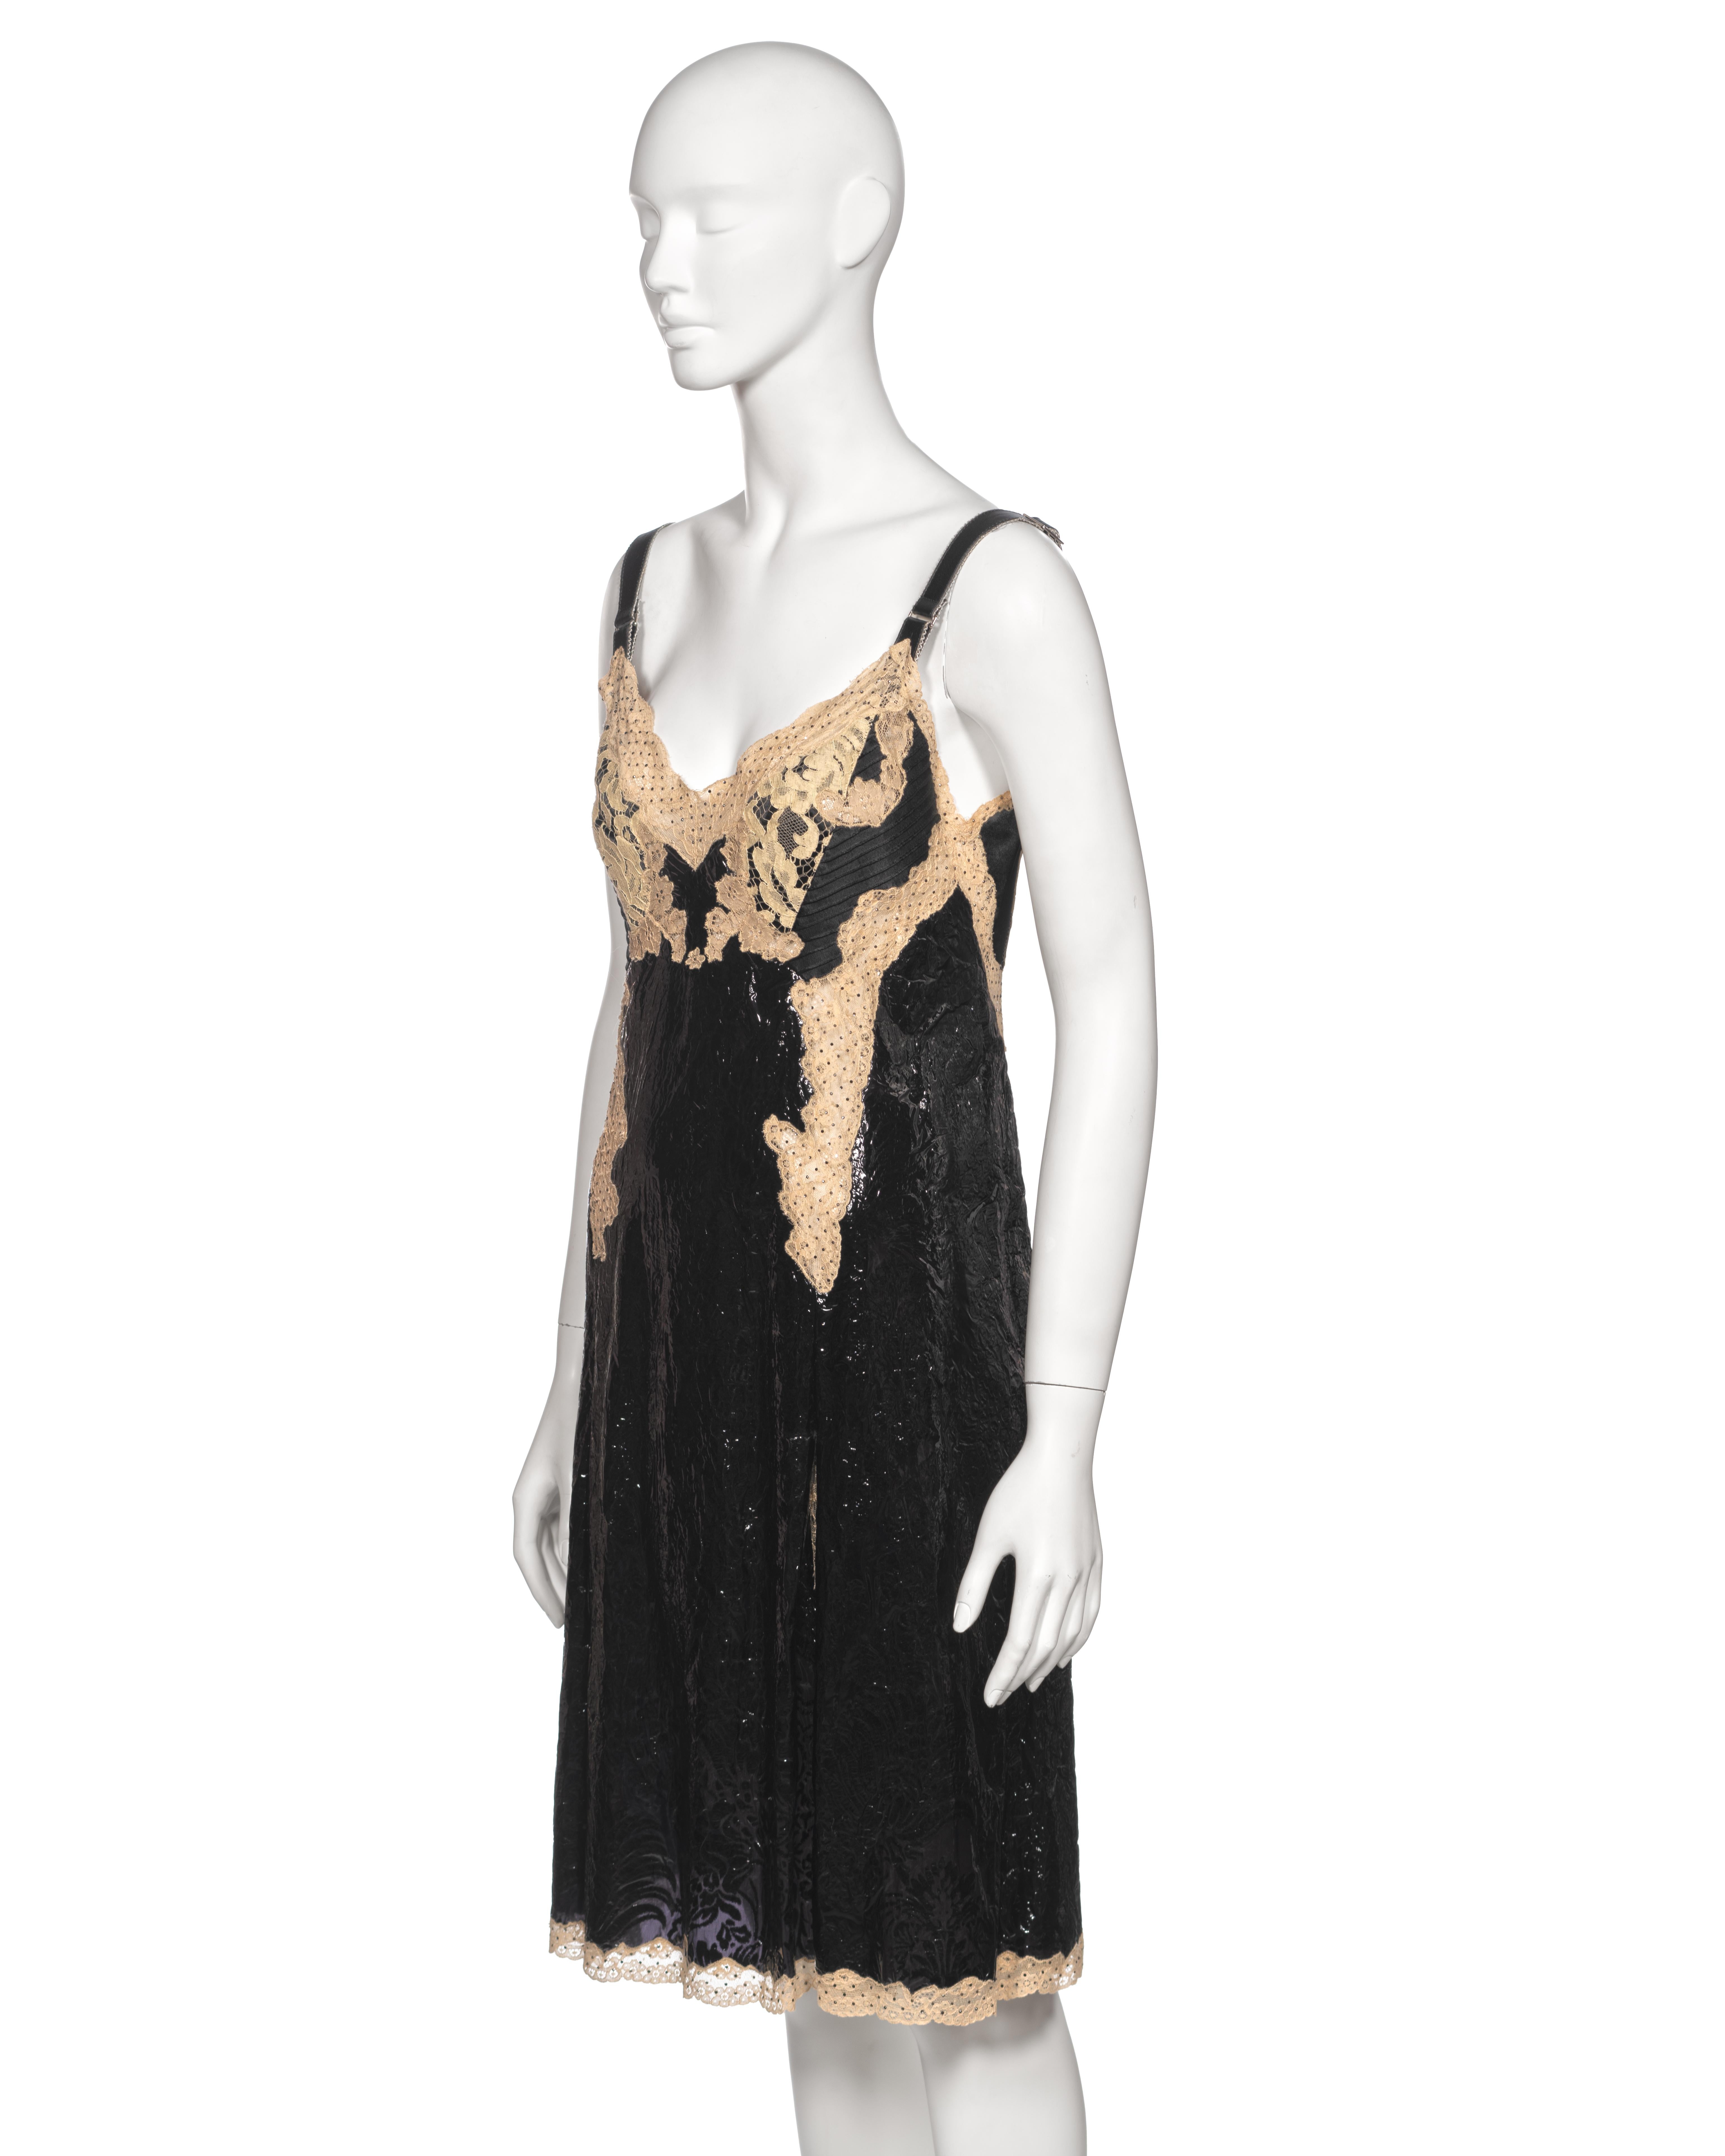 Louis Vuitton by Nicolas Ghesquière Evening Slip Dress Dress with Lace, fw 2017 For Sale 9